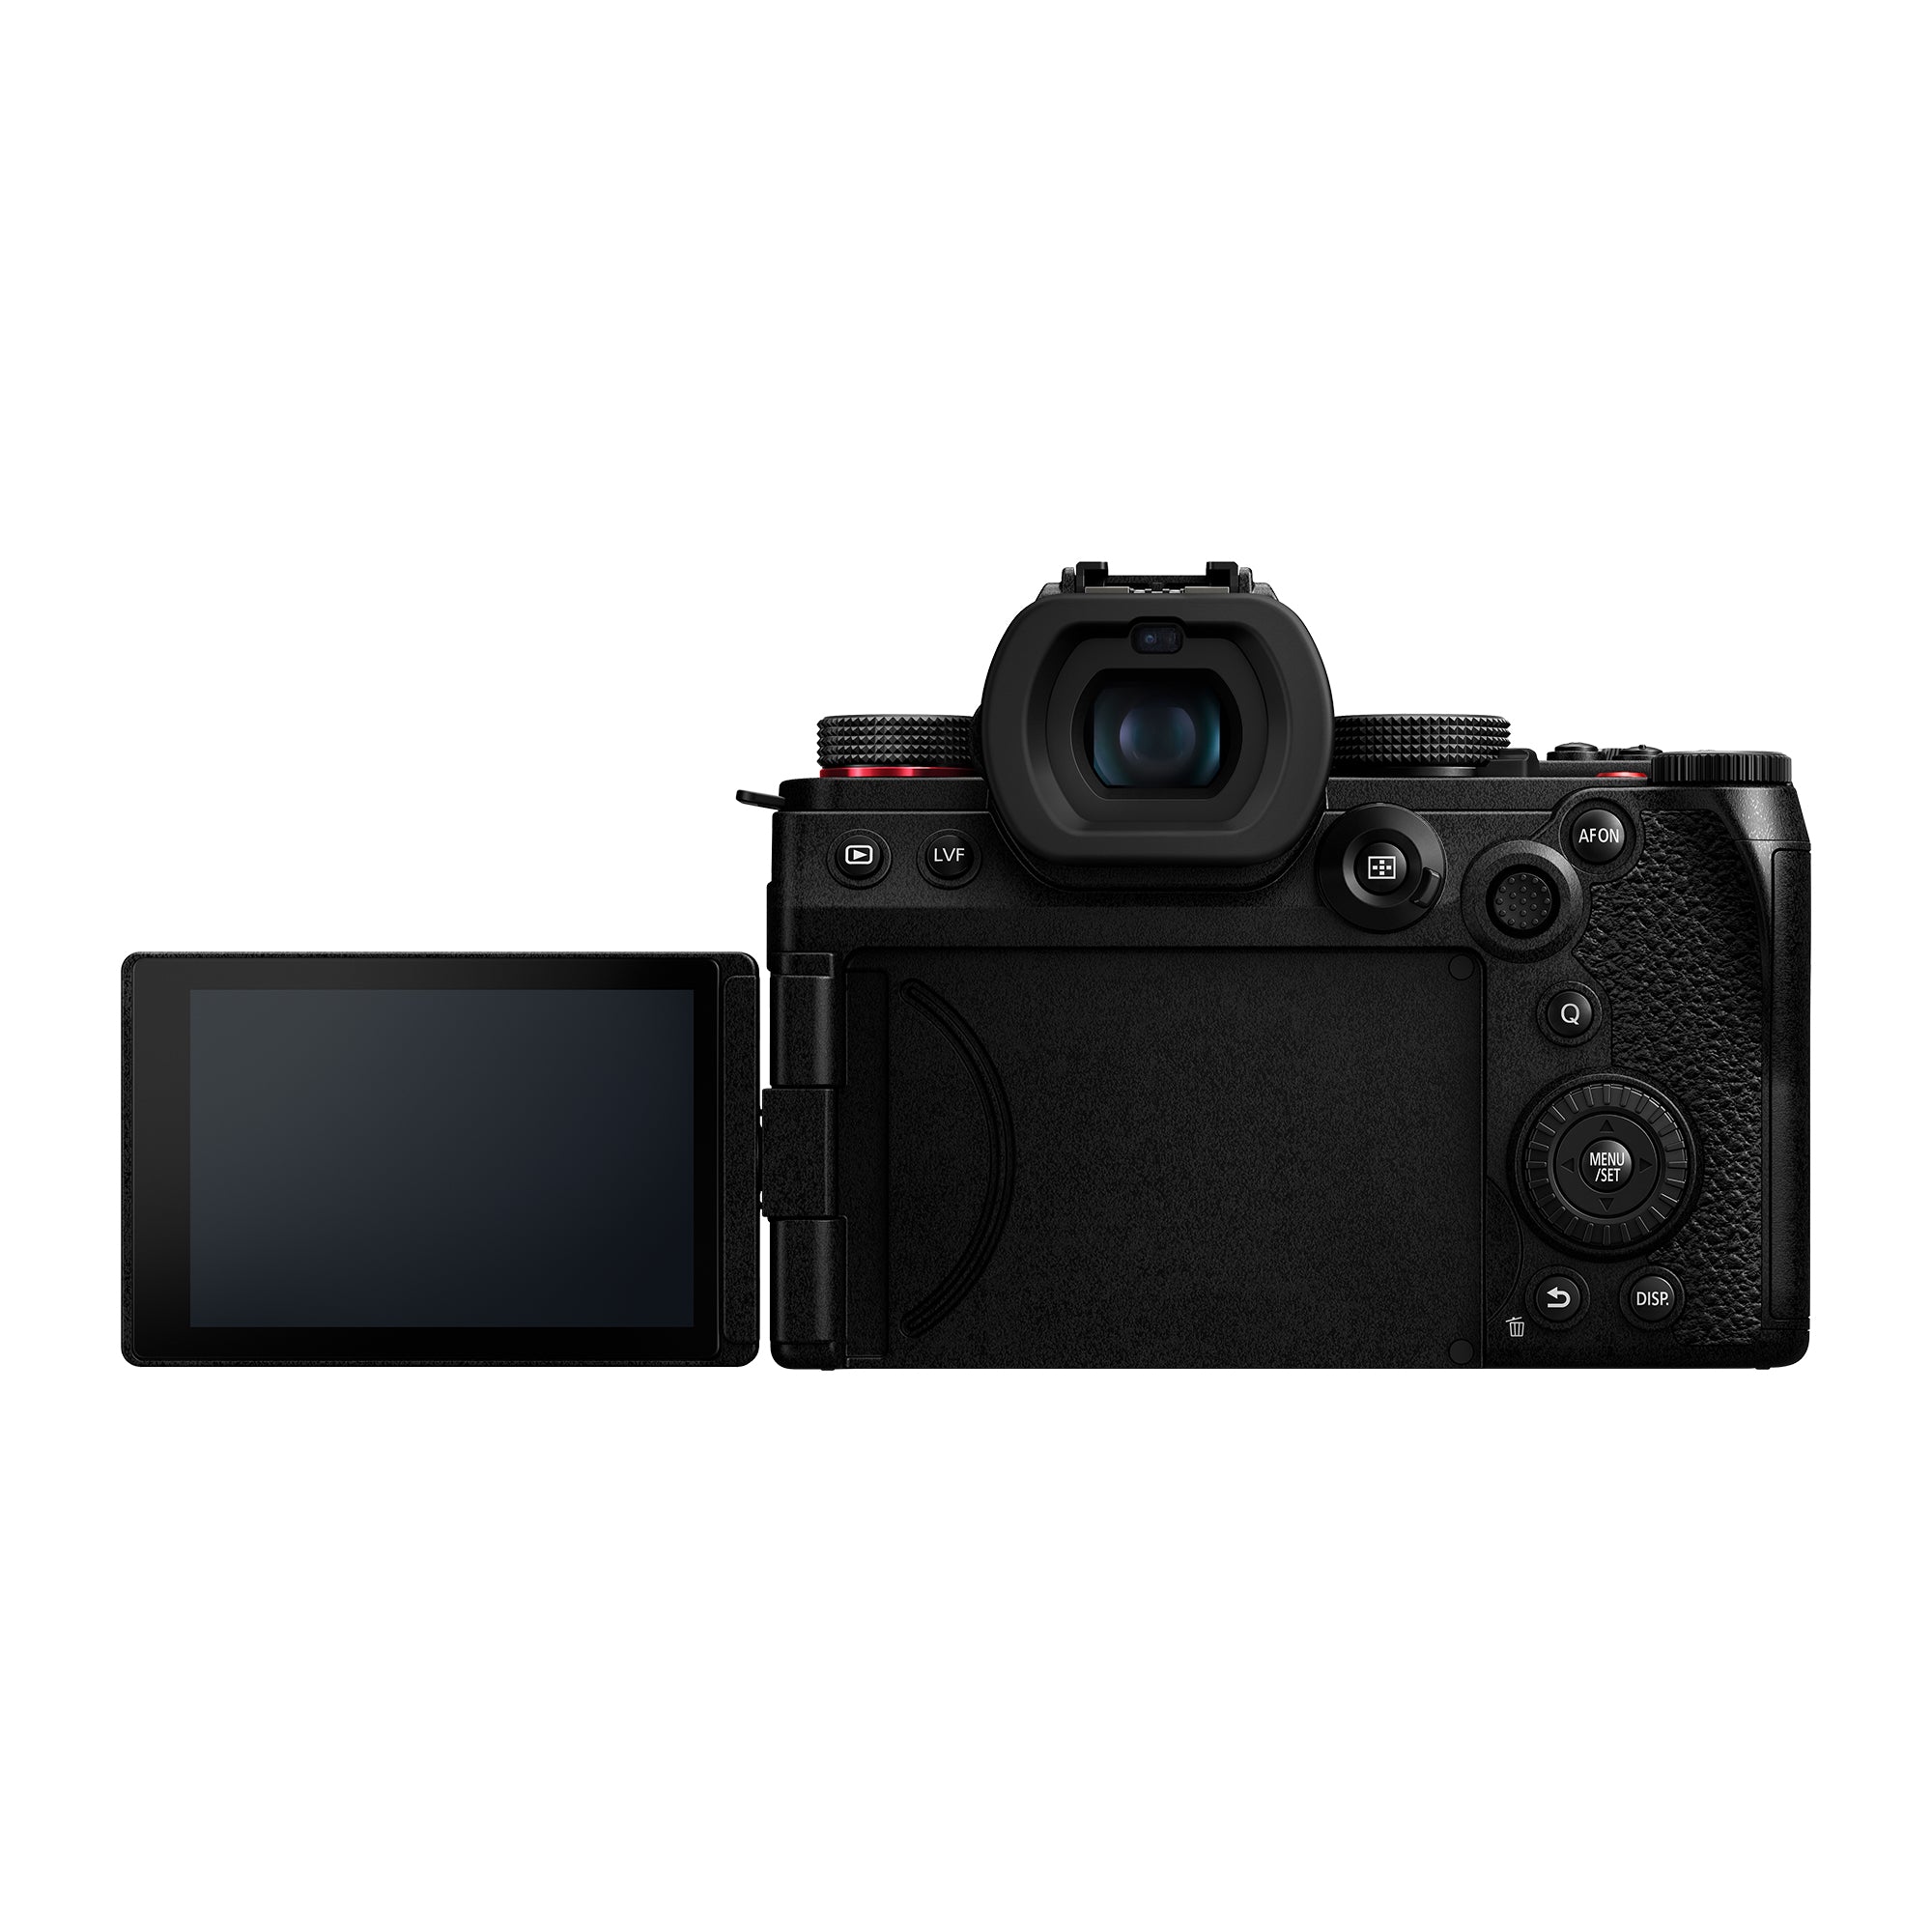 Panasonic S52 Lumix S5II DC-S5M2BODY Mirrorless Camera